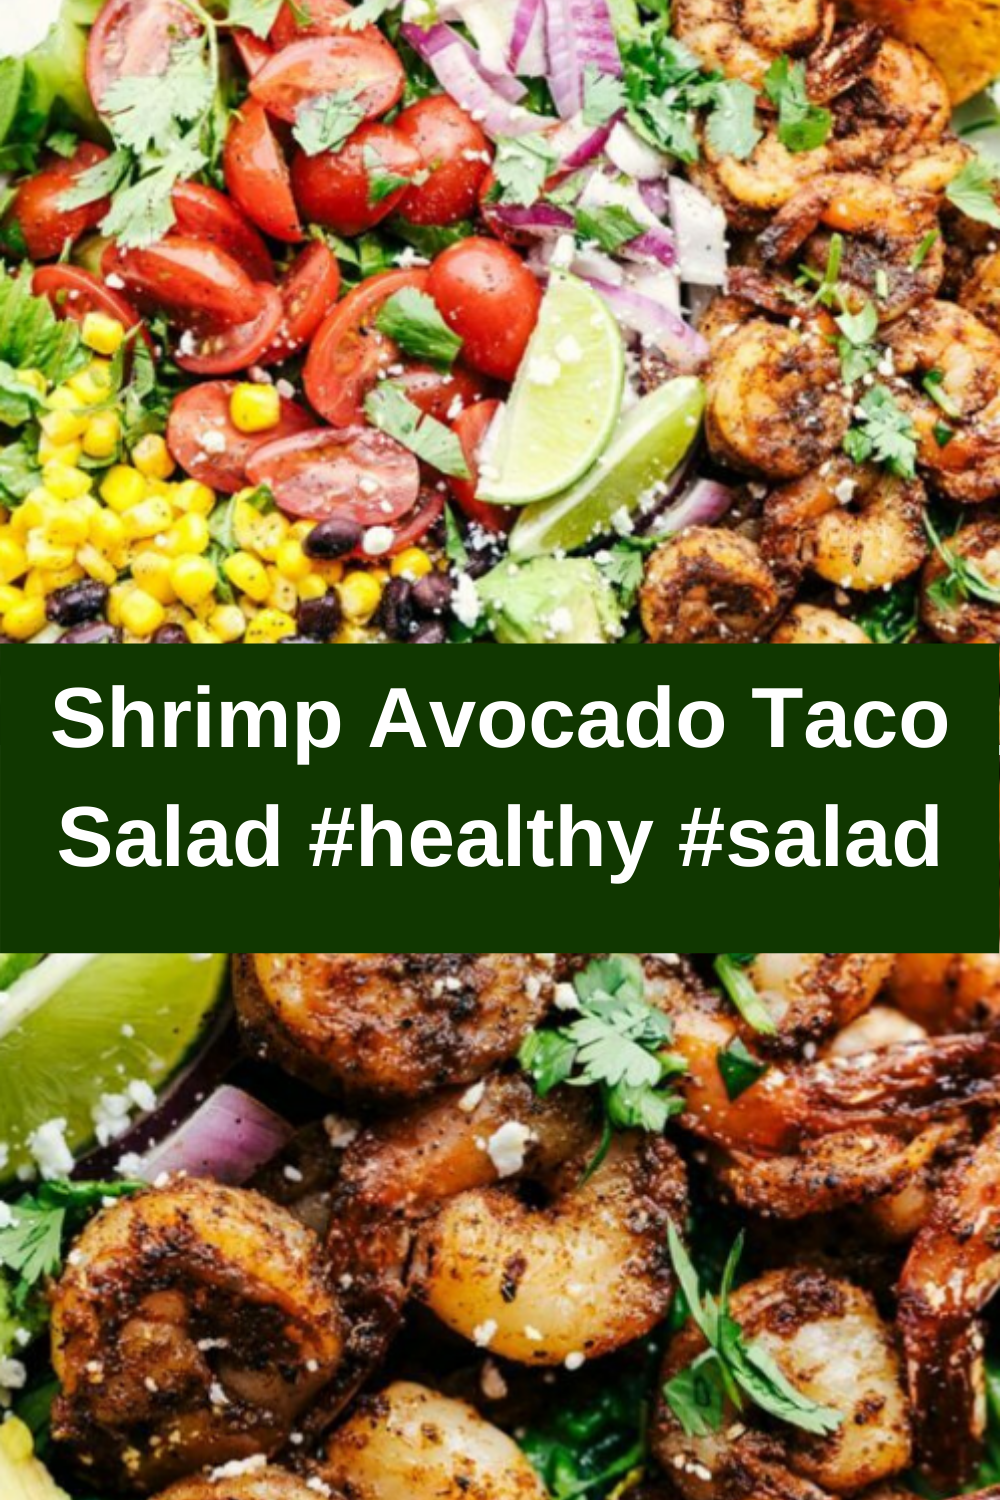 Shrimp Avocado Taco Salad